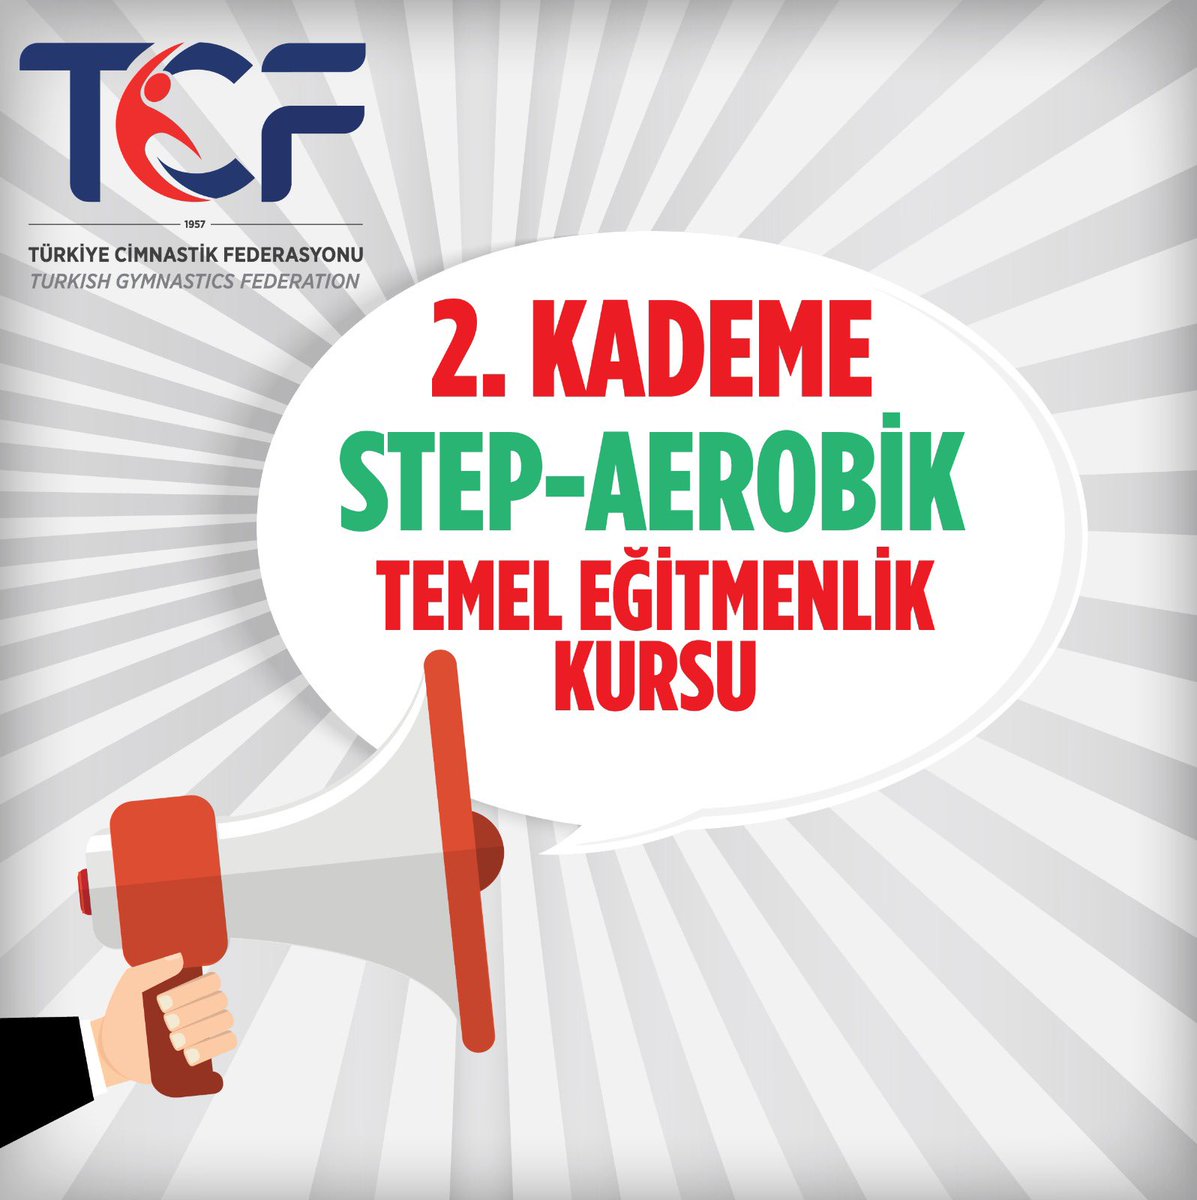 📢 1. Kademe Step Aerobik Yardımcı Eğitmenlik Kursu / 2. Kademe Step Aerobik Temel Eğitmenlik Kursu 🗓️ 14-19 Mayıs 2024 📍 İstanbul 🔔 Son başvuru 7 Mayıs 2024